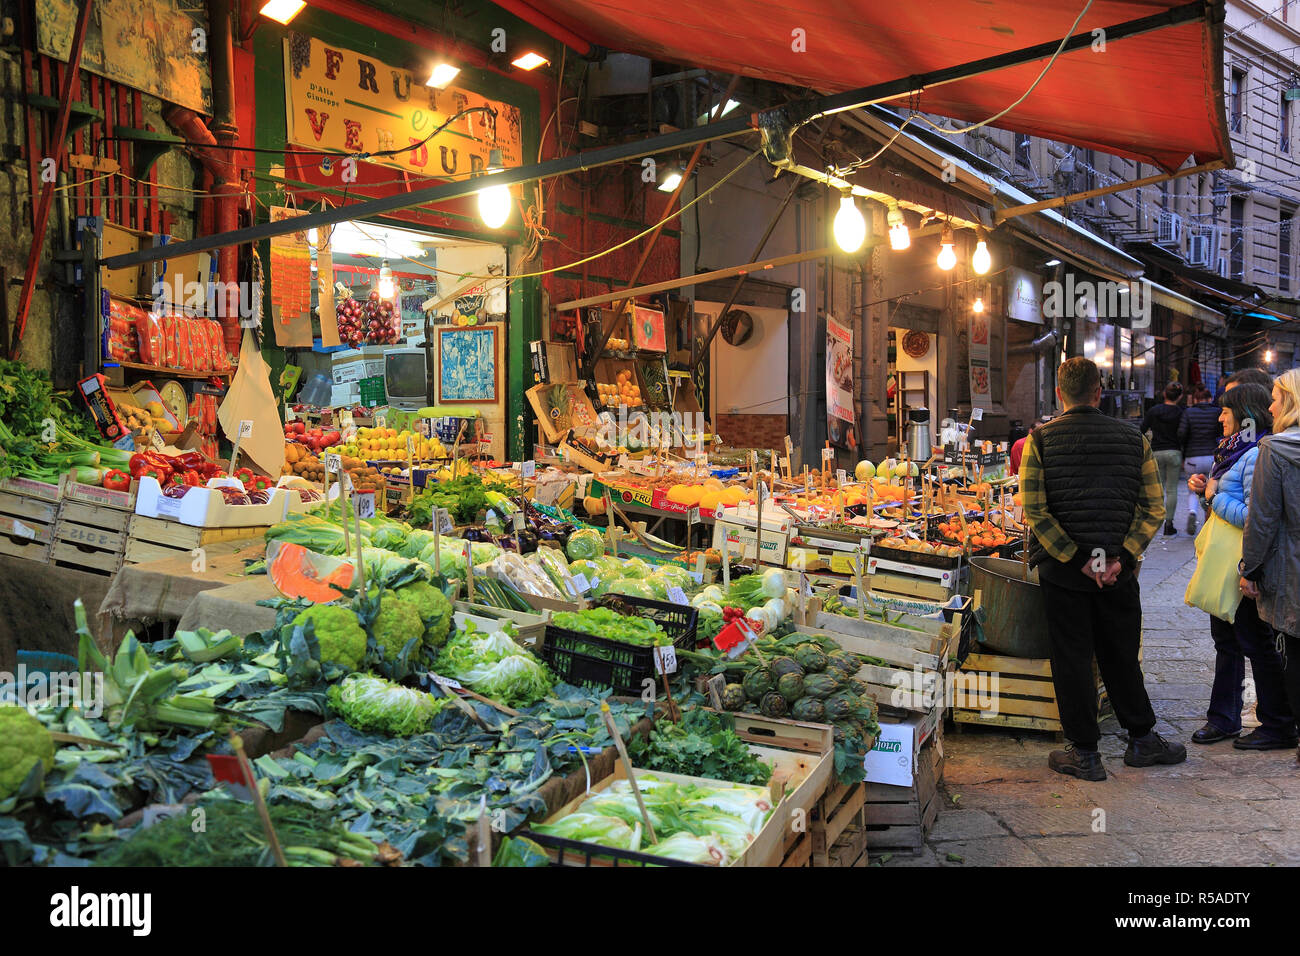 Kiosque de légumes du marché, dans le quartier de la Vucciria, Mercato Vucciria, Palerme, Sicile, Italie Banque D'Images